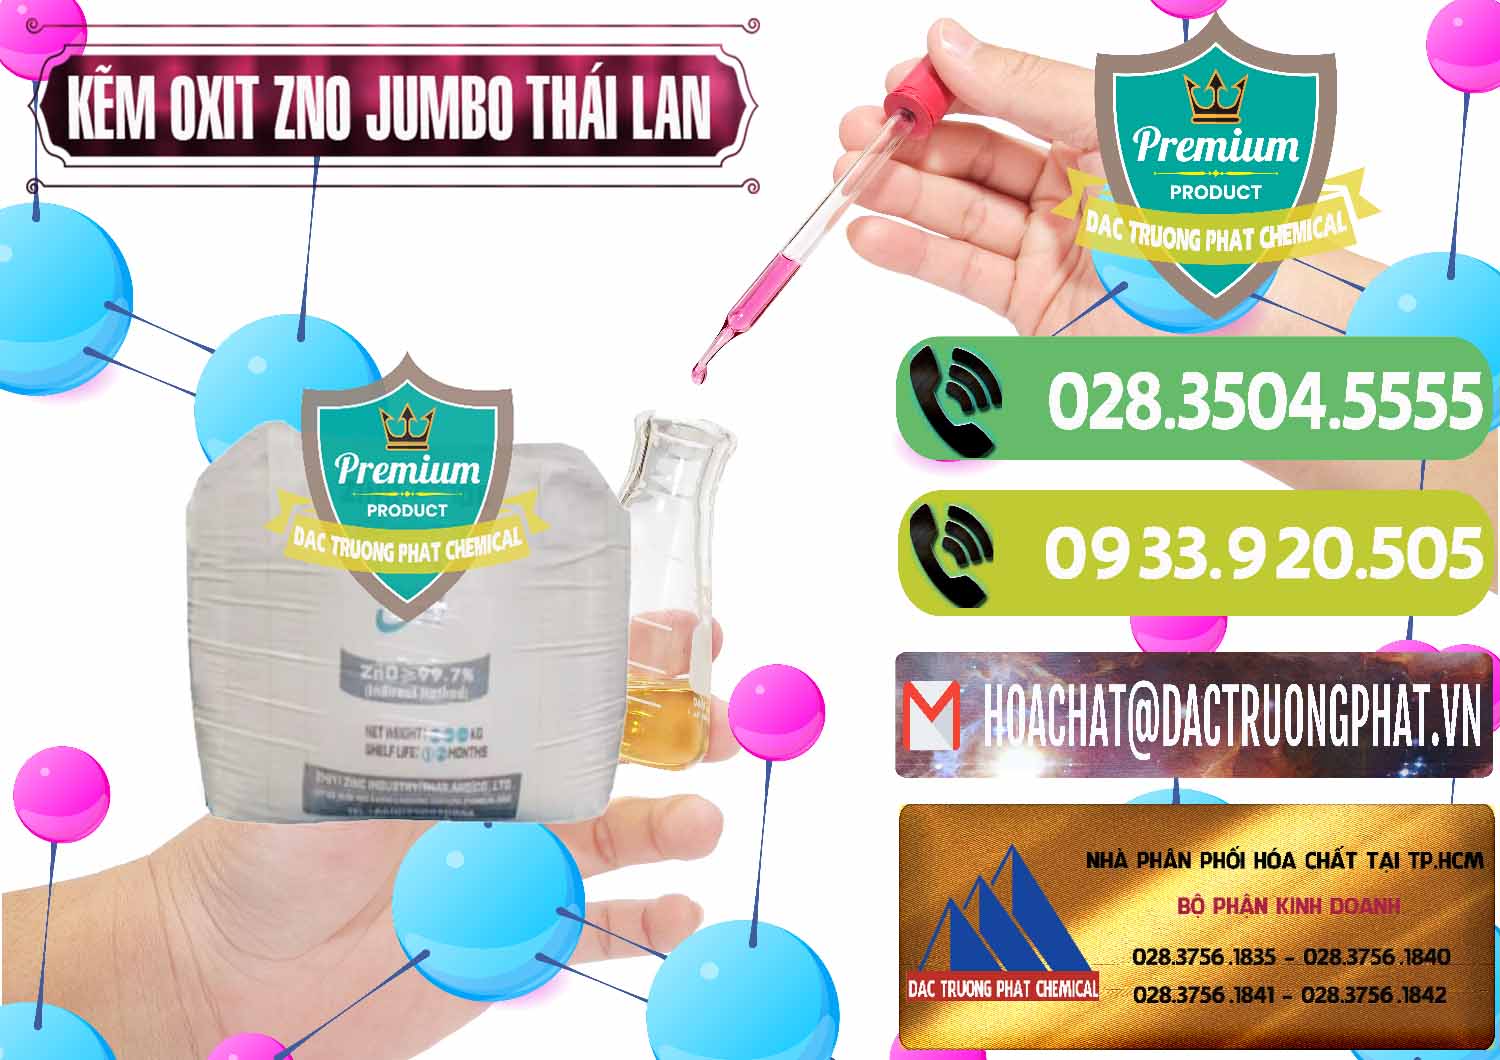 Chuyên nhập khẩu - bán Zinc Oxide - Bột Kẽm Oxit ZNO Jumbo Bành Thái Lan Thailand - 0370 - Chuyên phân phối & nhập khẩu hóa chất tại TP.HCM - hoachatmientay.vn